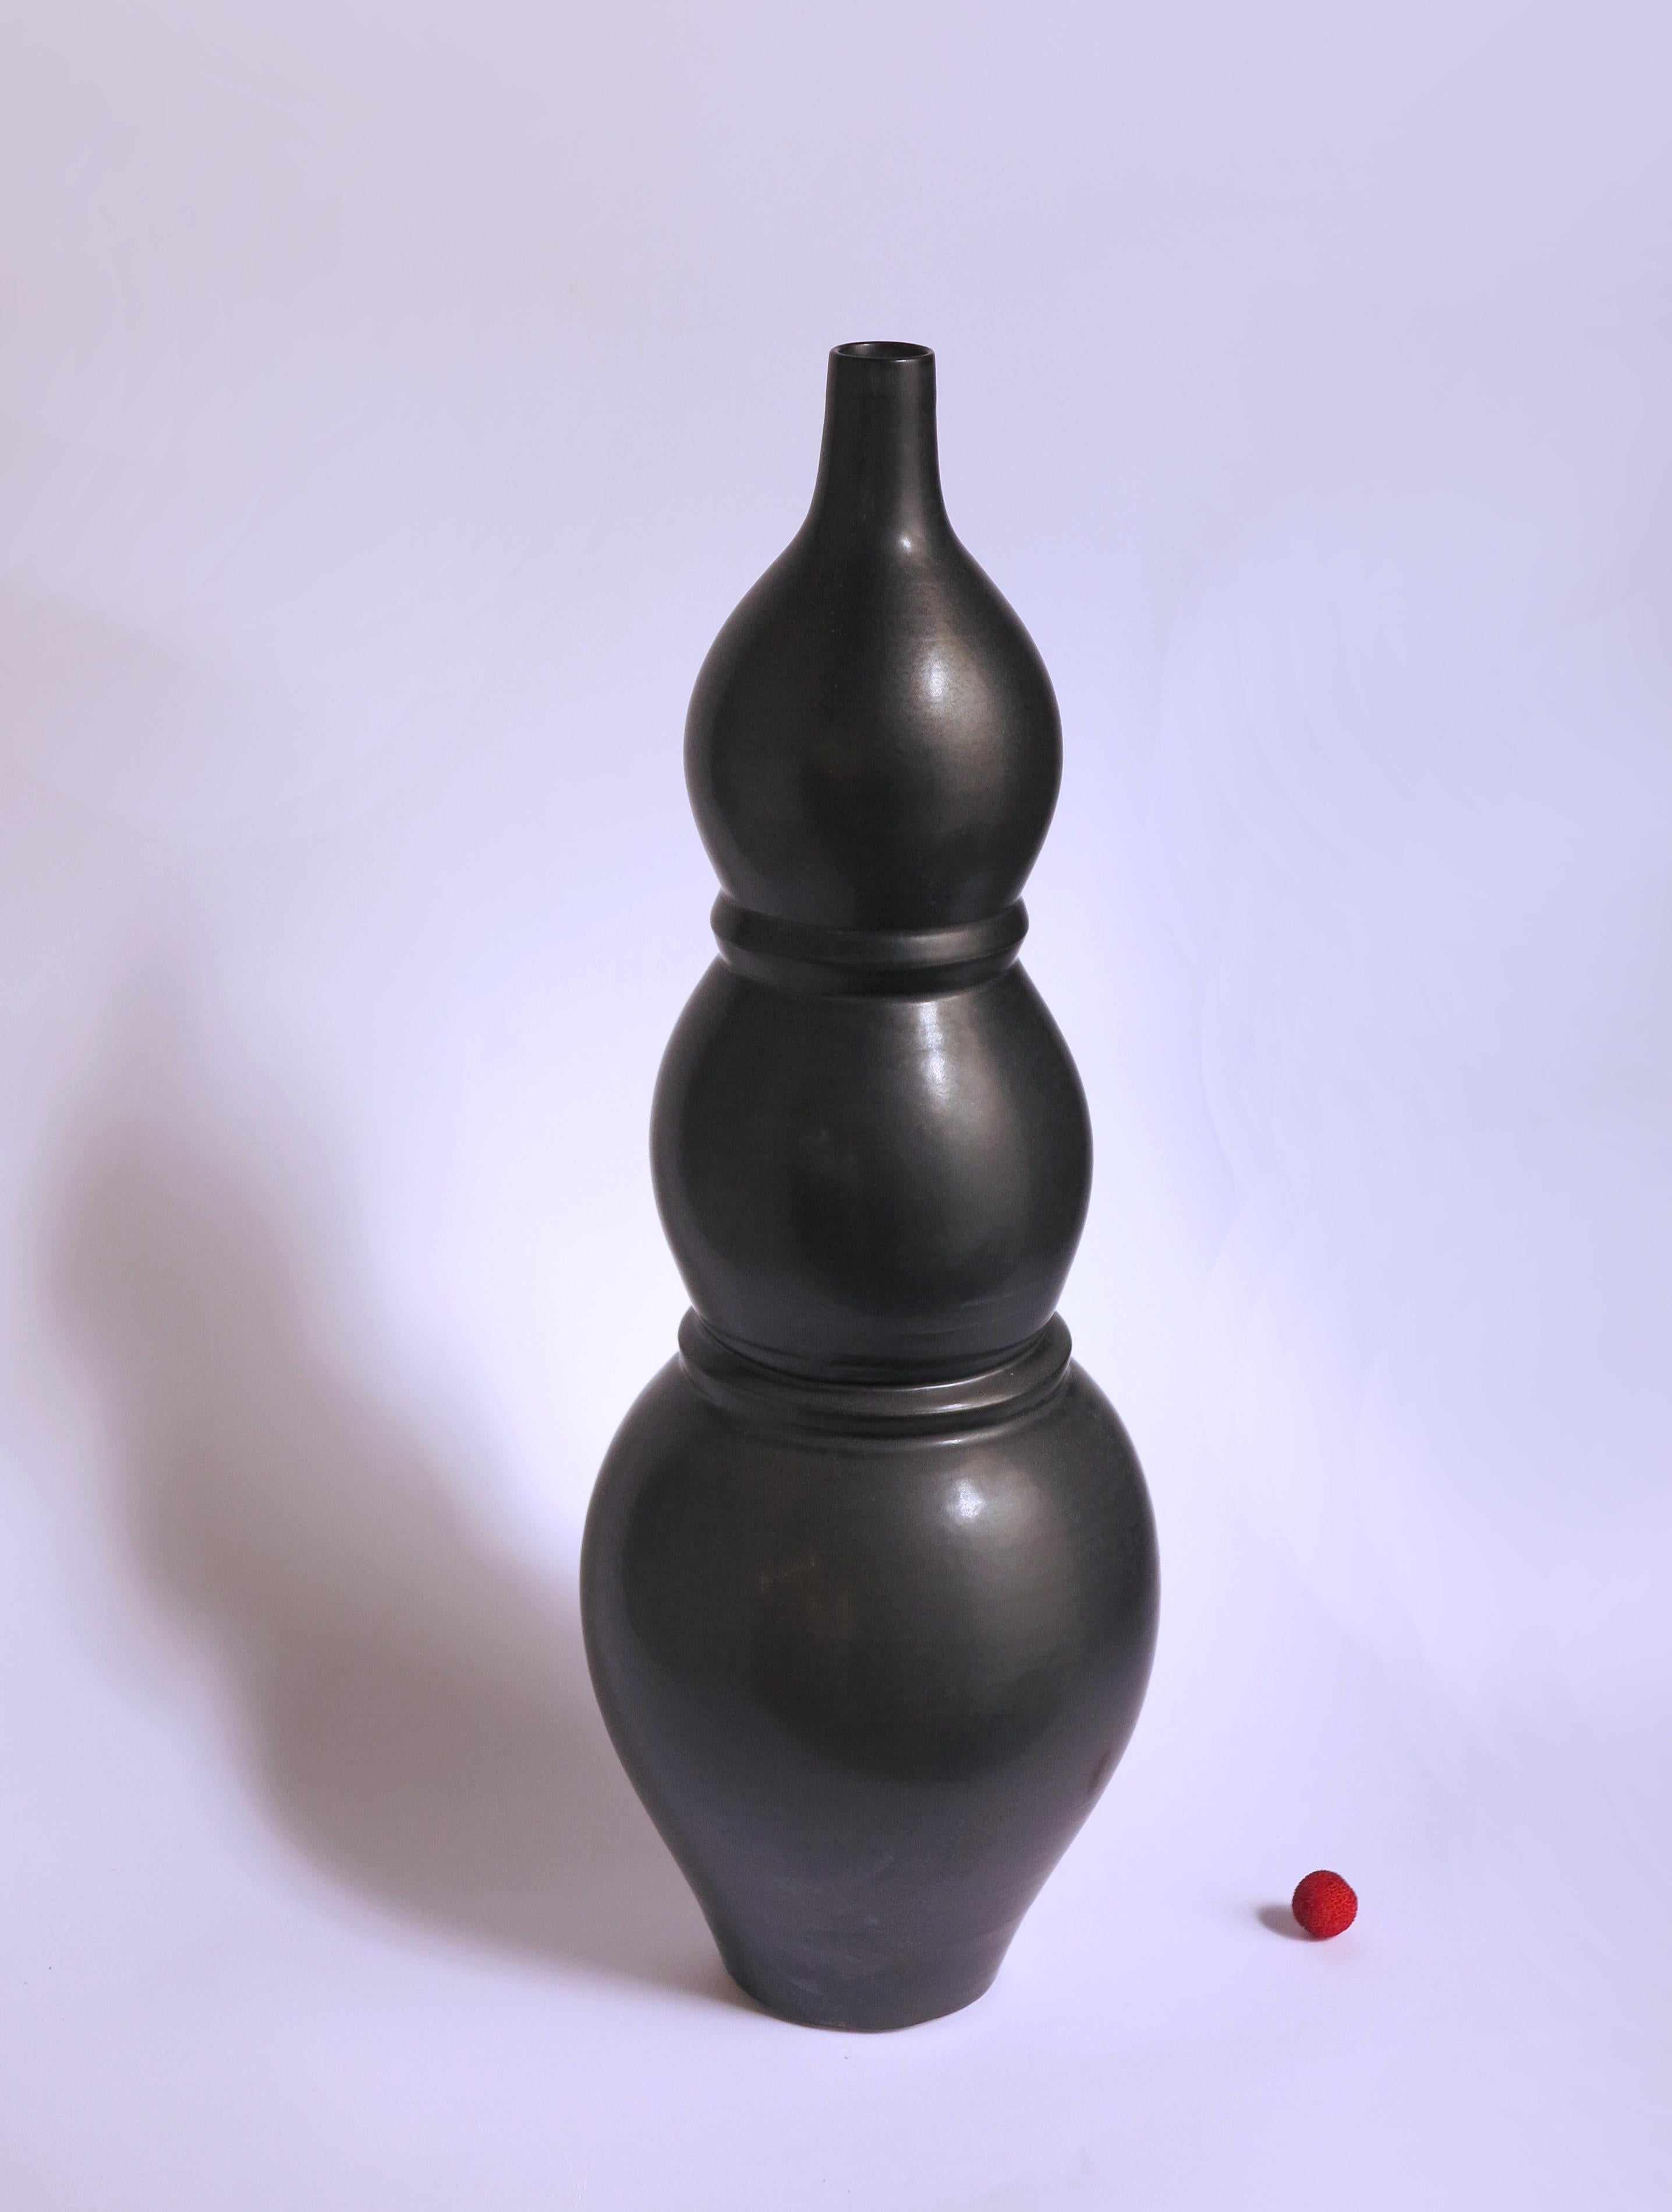 Grand vase Noir de Cica Gomez
Dimensions : Ø 16cm x H 48cm
Matériaux : Grès cérame


Objets habituels. Mon travail est d'abord motivé par la recherche de la ligne. Celui qu'il dessine lorsque l'objet prend forme et place dans l'espace. Ce qui